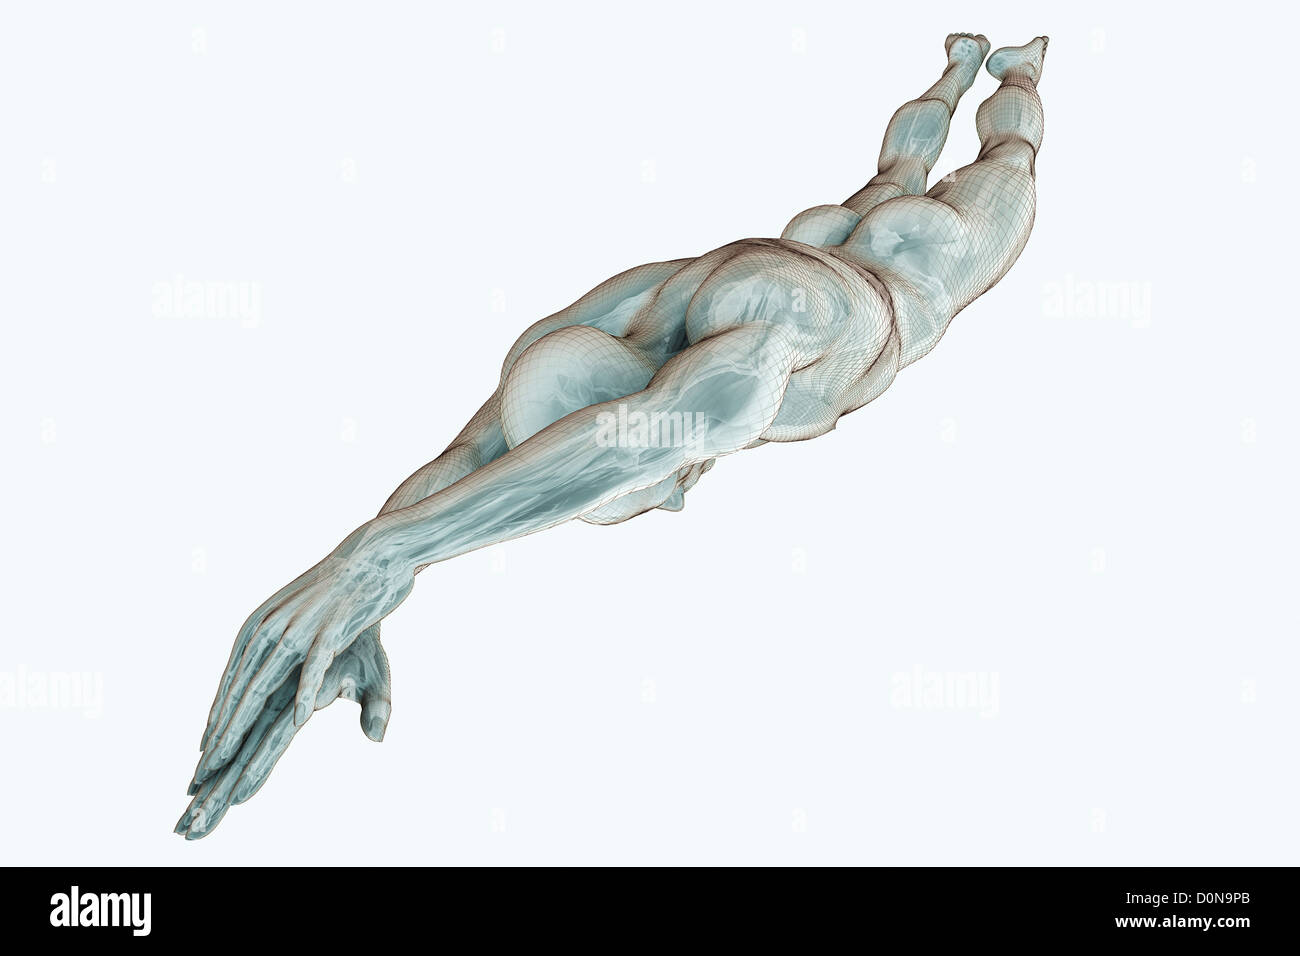 Männliche Figur Tauchen mit den inneren Organen sichtbar. Stockfoto